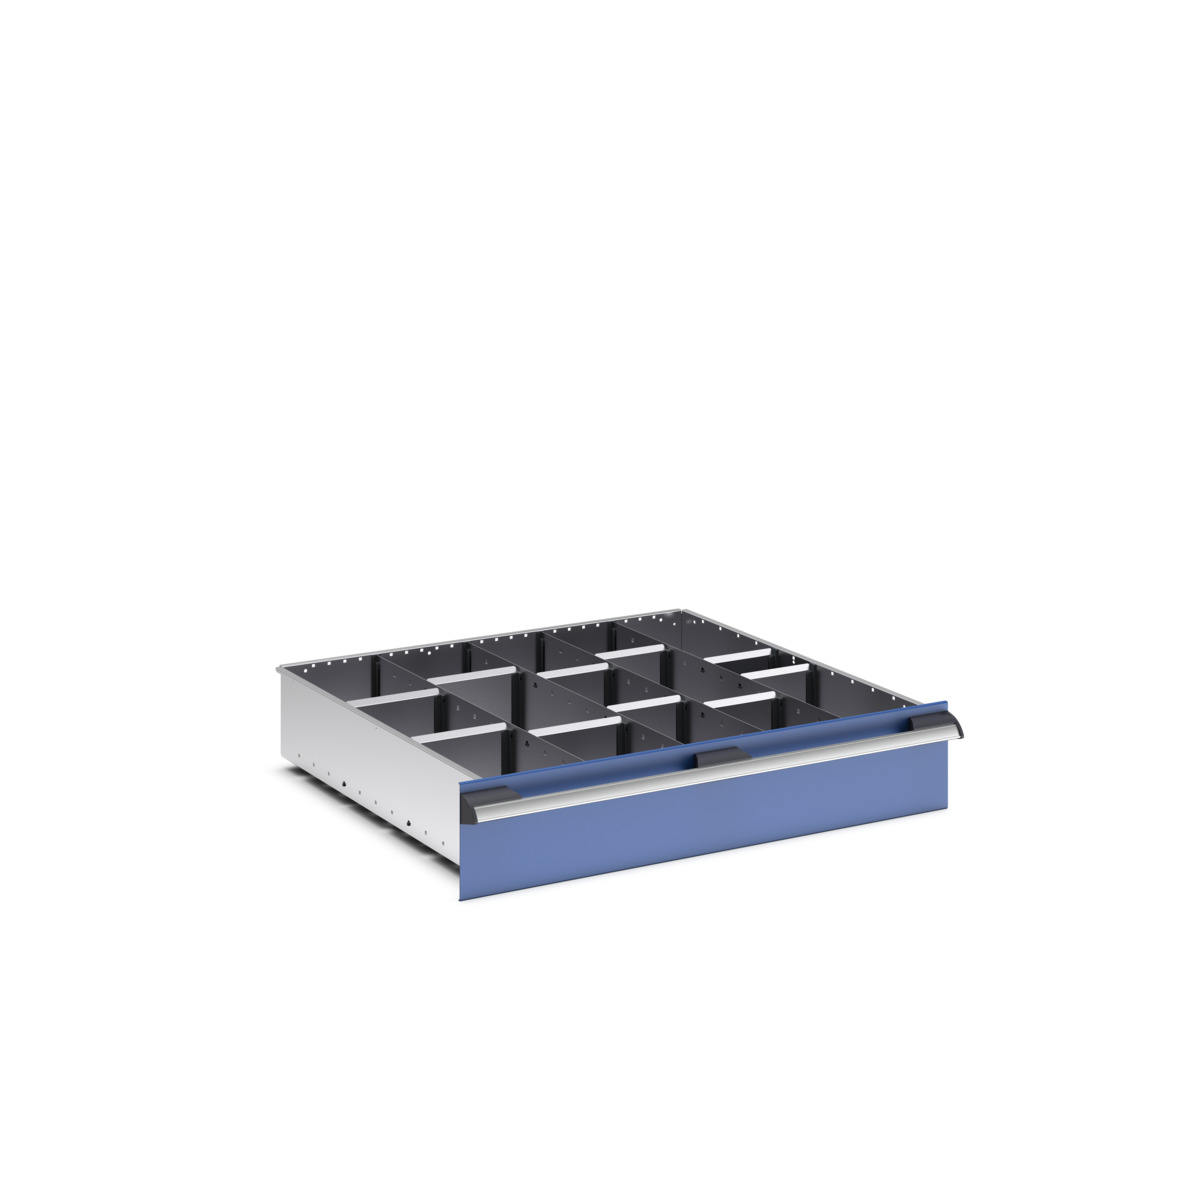 43020669.51 - cubio adjustable divider kit